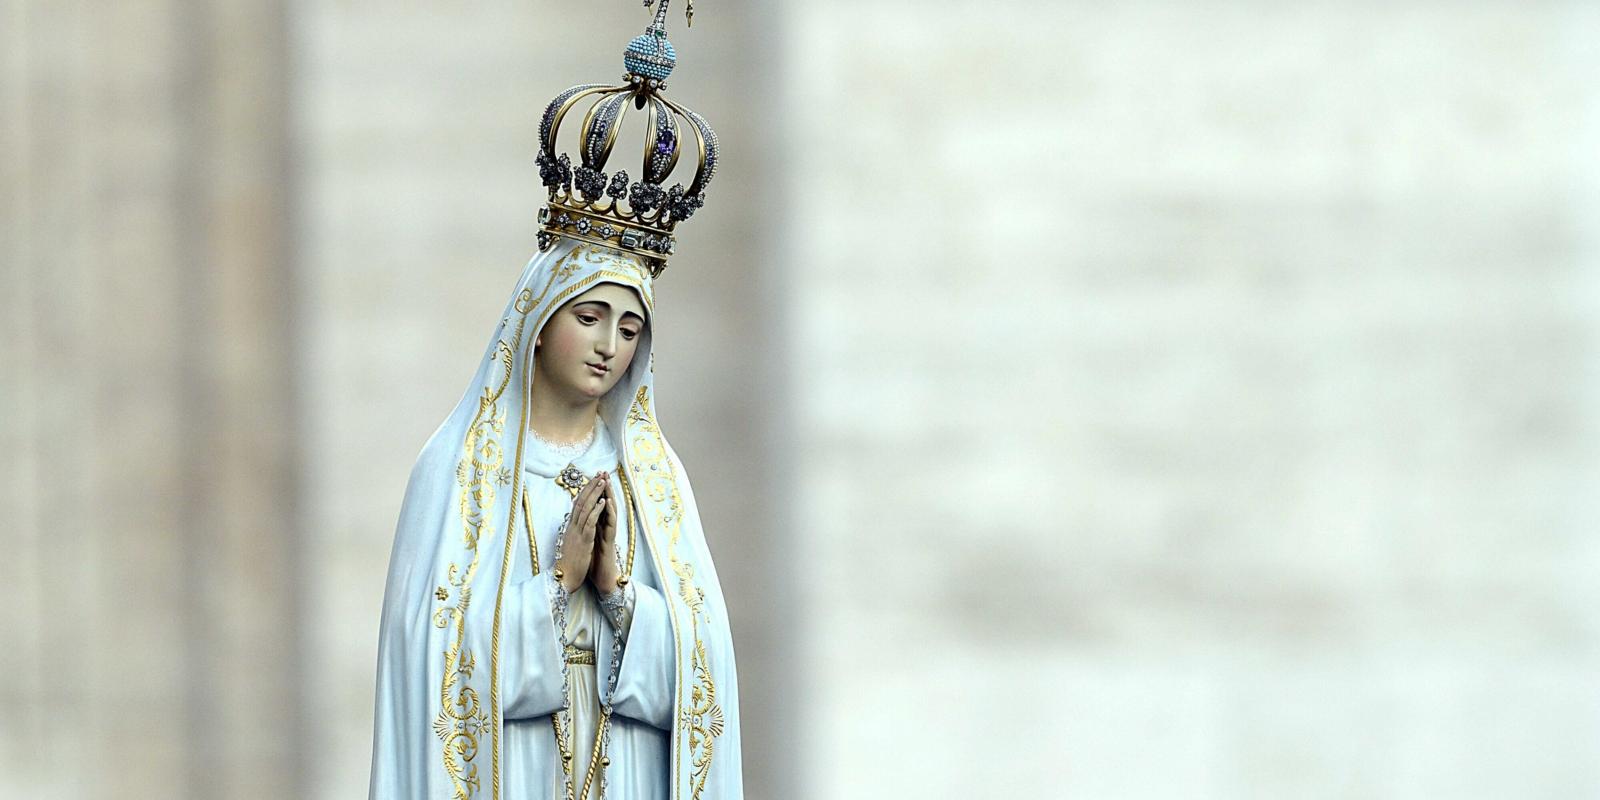 Die Originalstatue der Madonna von Fatima während eines Rosenkranzgebets mit Papst Franziskus am 12. Oktober 2013 auf dem Petersplatz.

Nur für redaktionelle Verwendung in Online- und Socieal Media-Medien. (KNA-Bild)
Copyright 2013, KNA GmbH, www.kna.de, All Rights Reserved